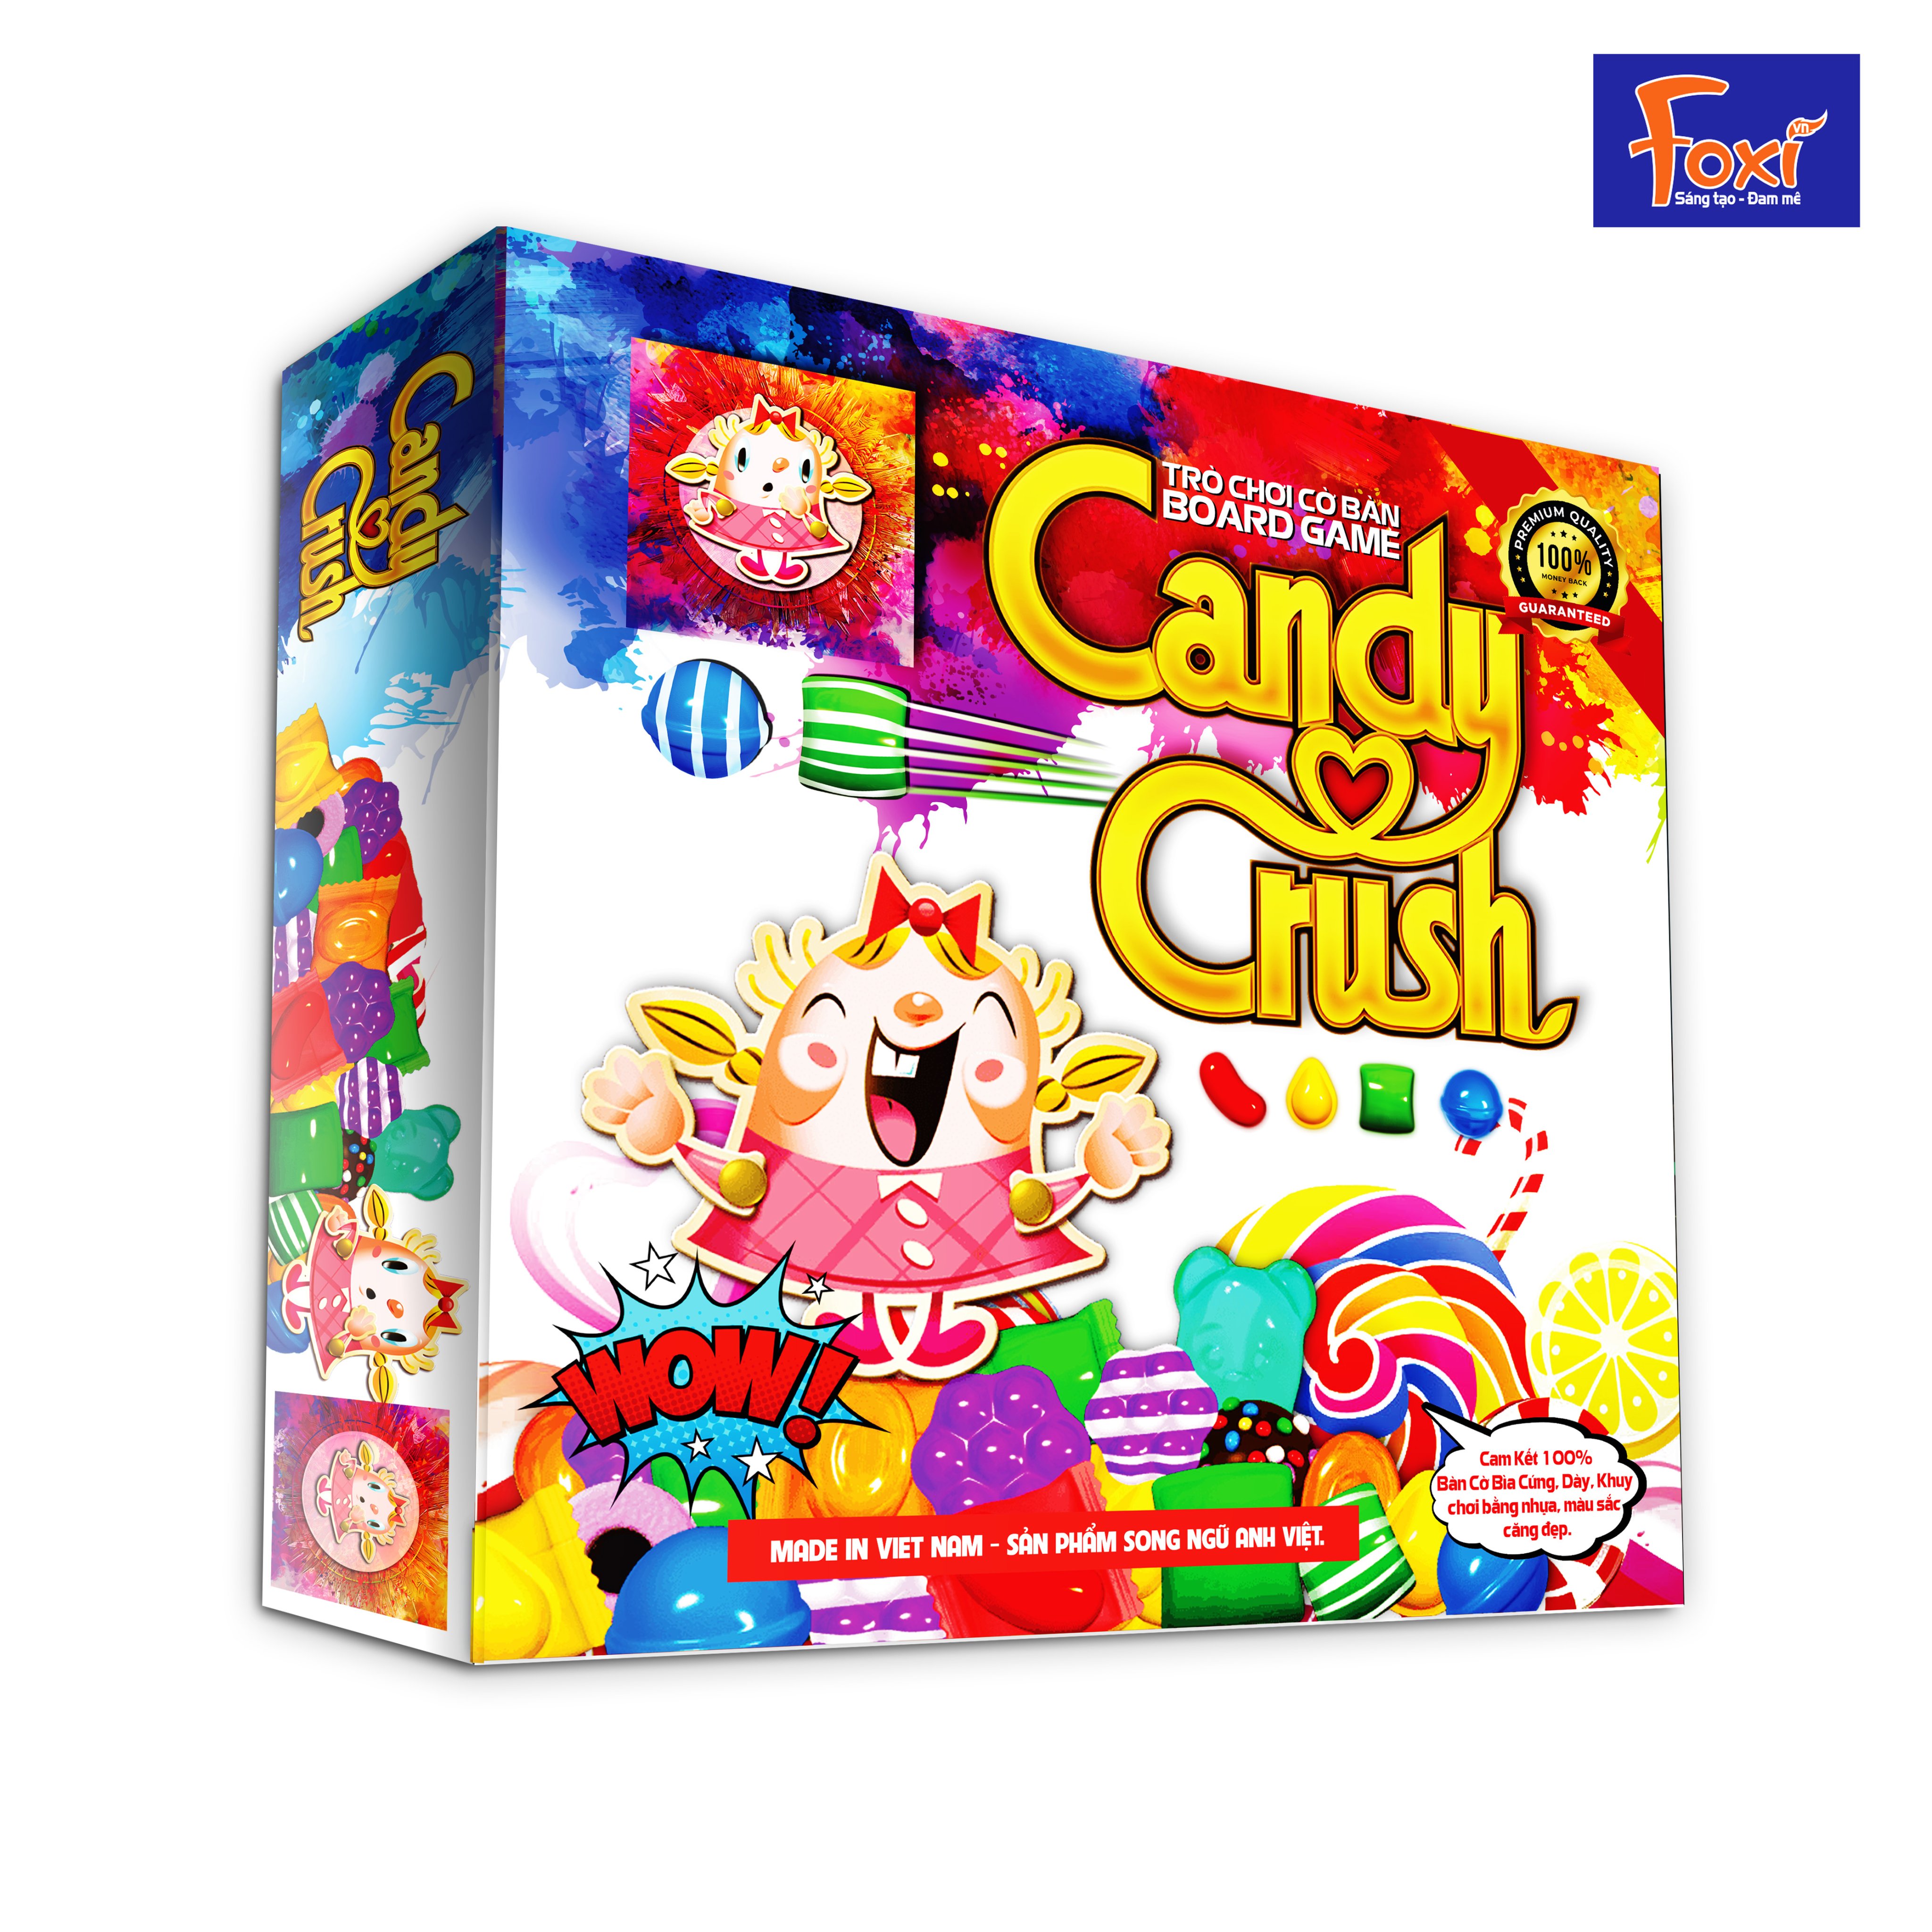 Board game-Candy Crush Foxi-đồ chơi phát triển tư duy-tăng trí nhớ-dễ chơi-vui nhộn